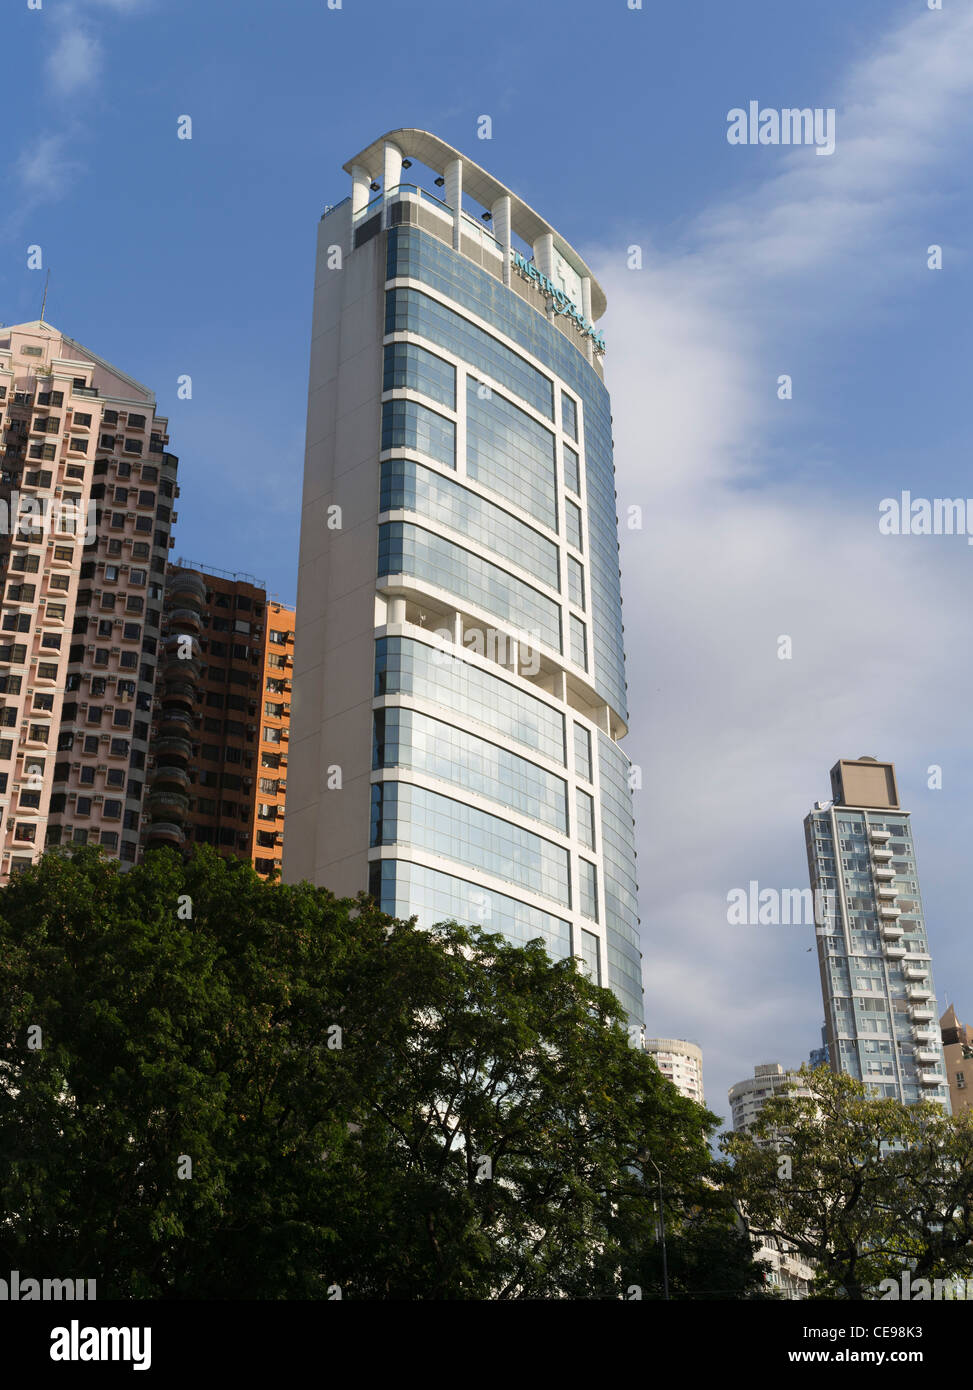 dh CAUSEWAY BAY HONG KONG Metropark Hotel grattacielo di Hong Kong edificio moderno hotel asia architettura cina Foto Stock